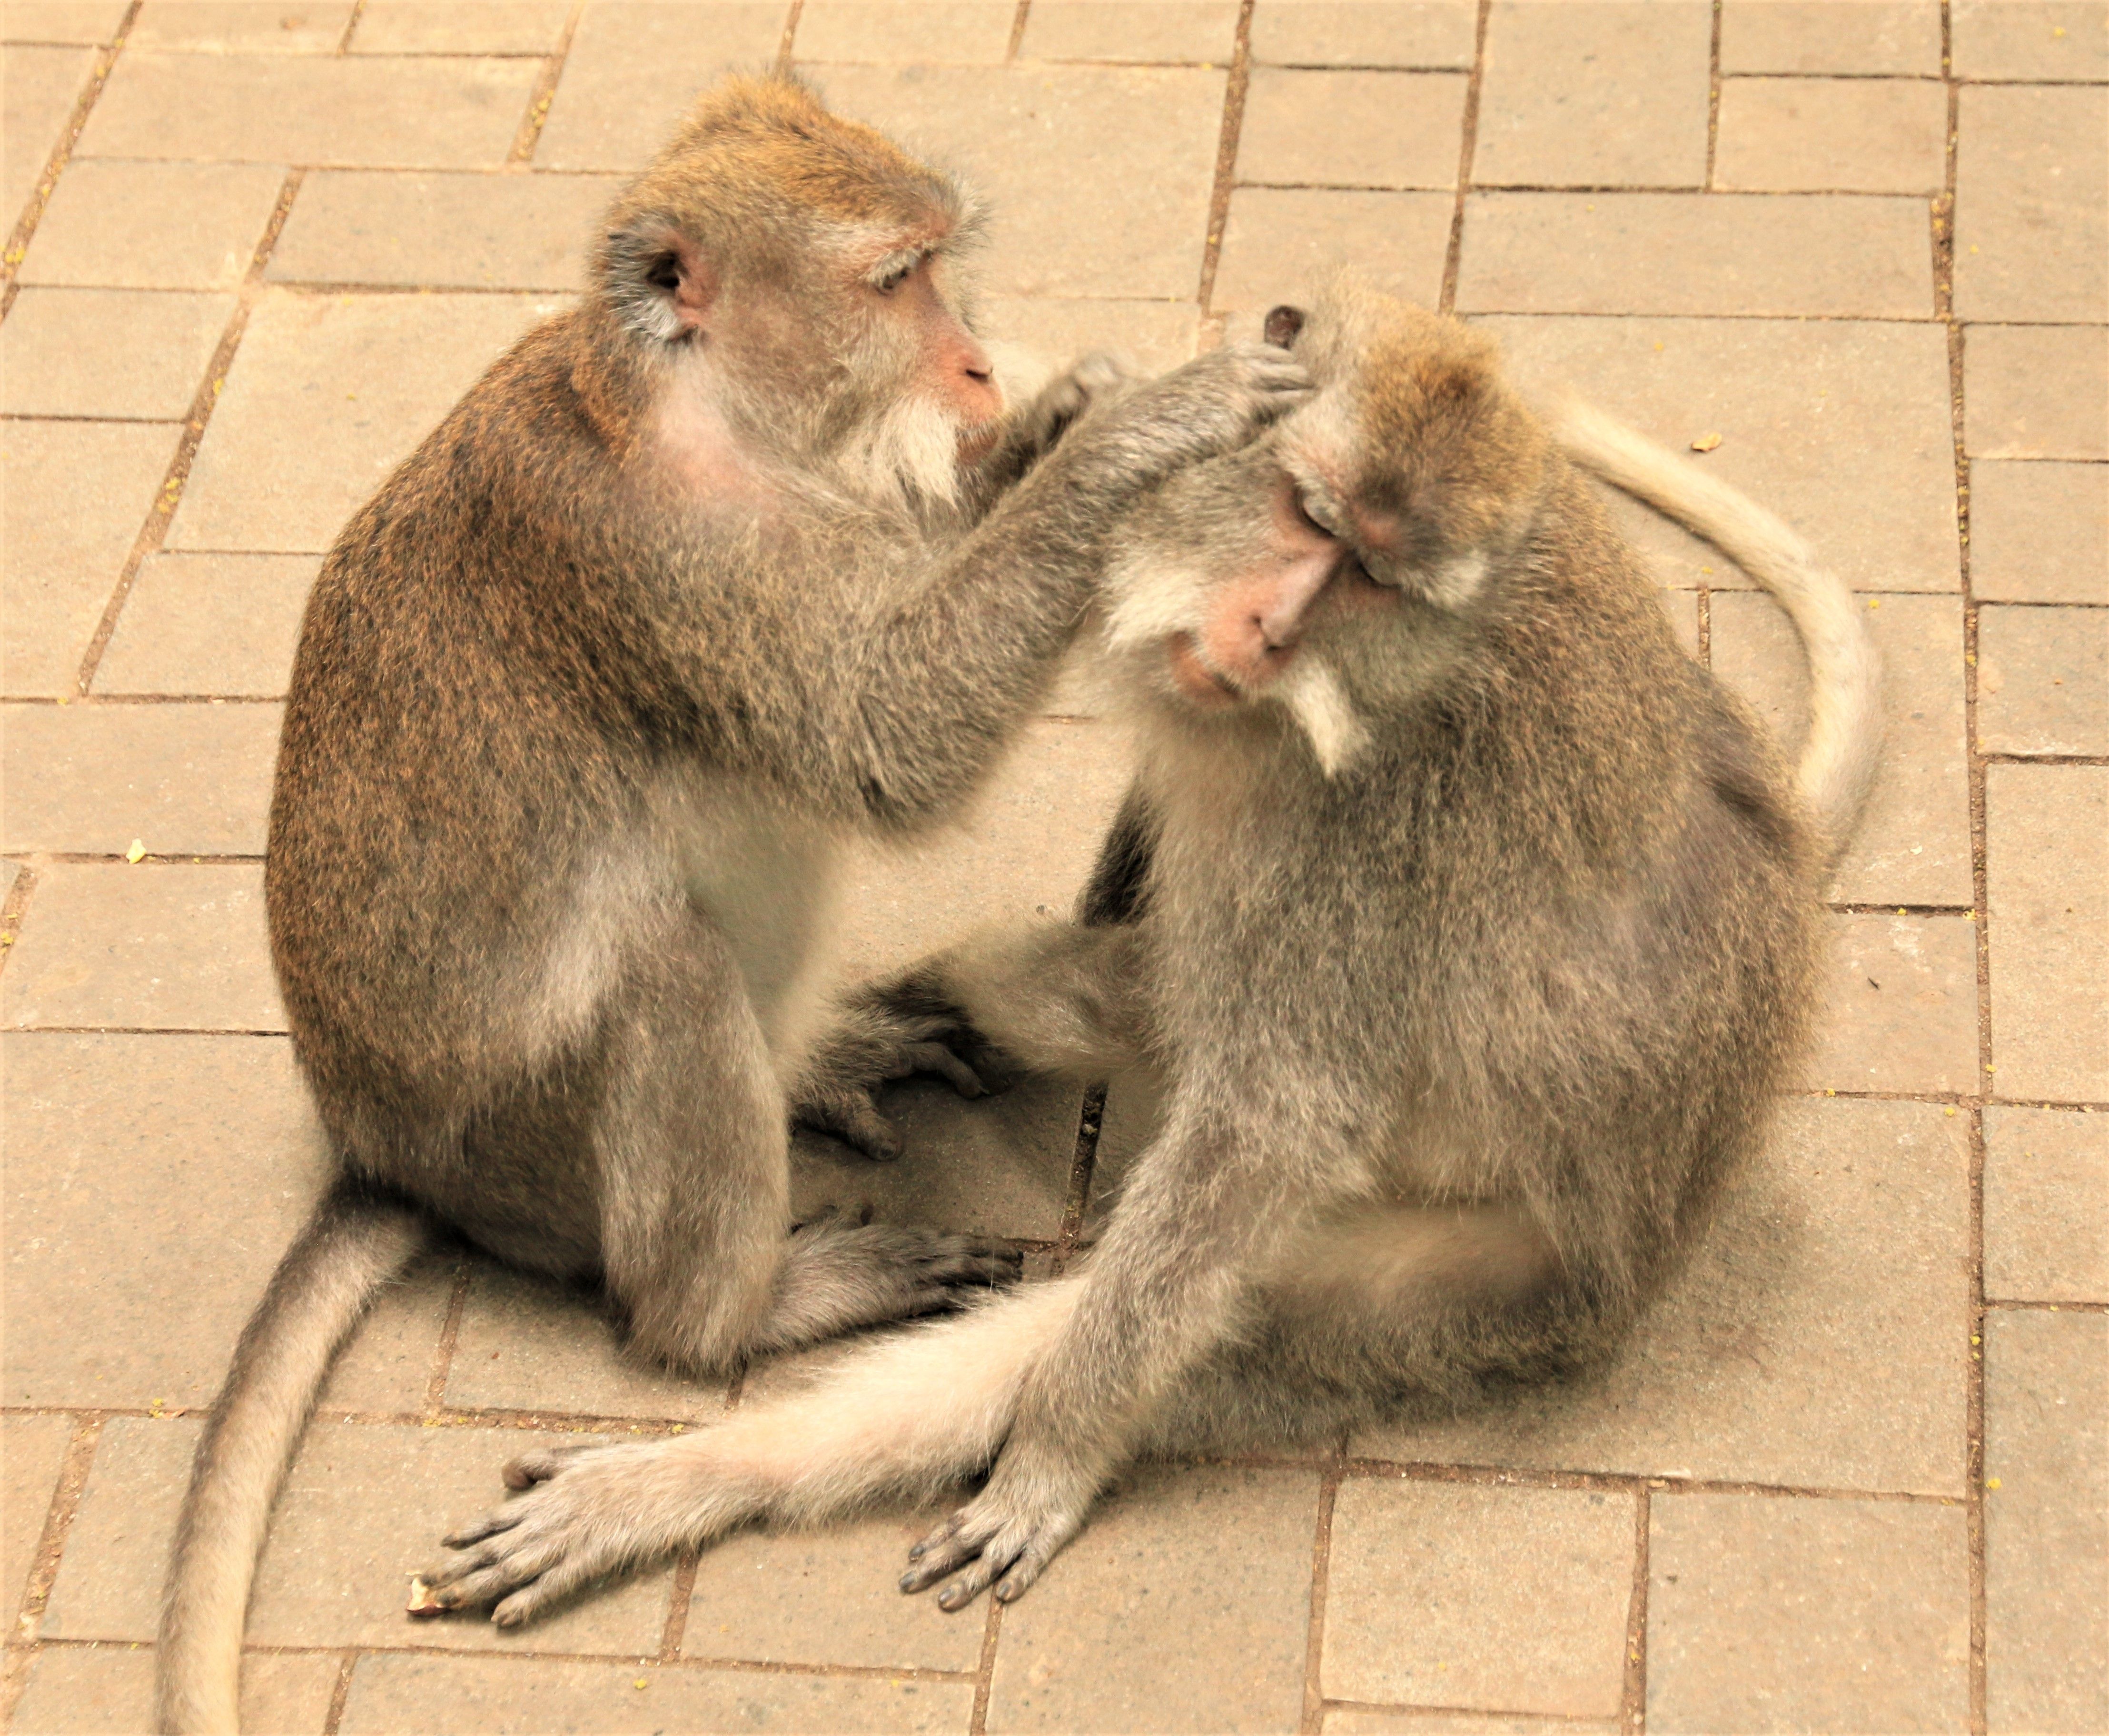 Ubud monkeys